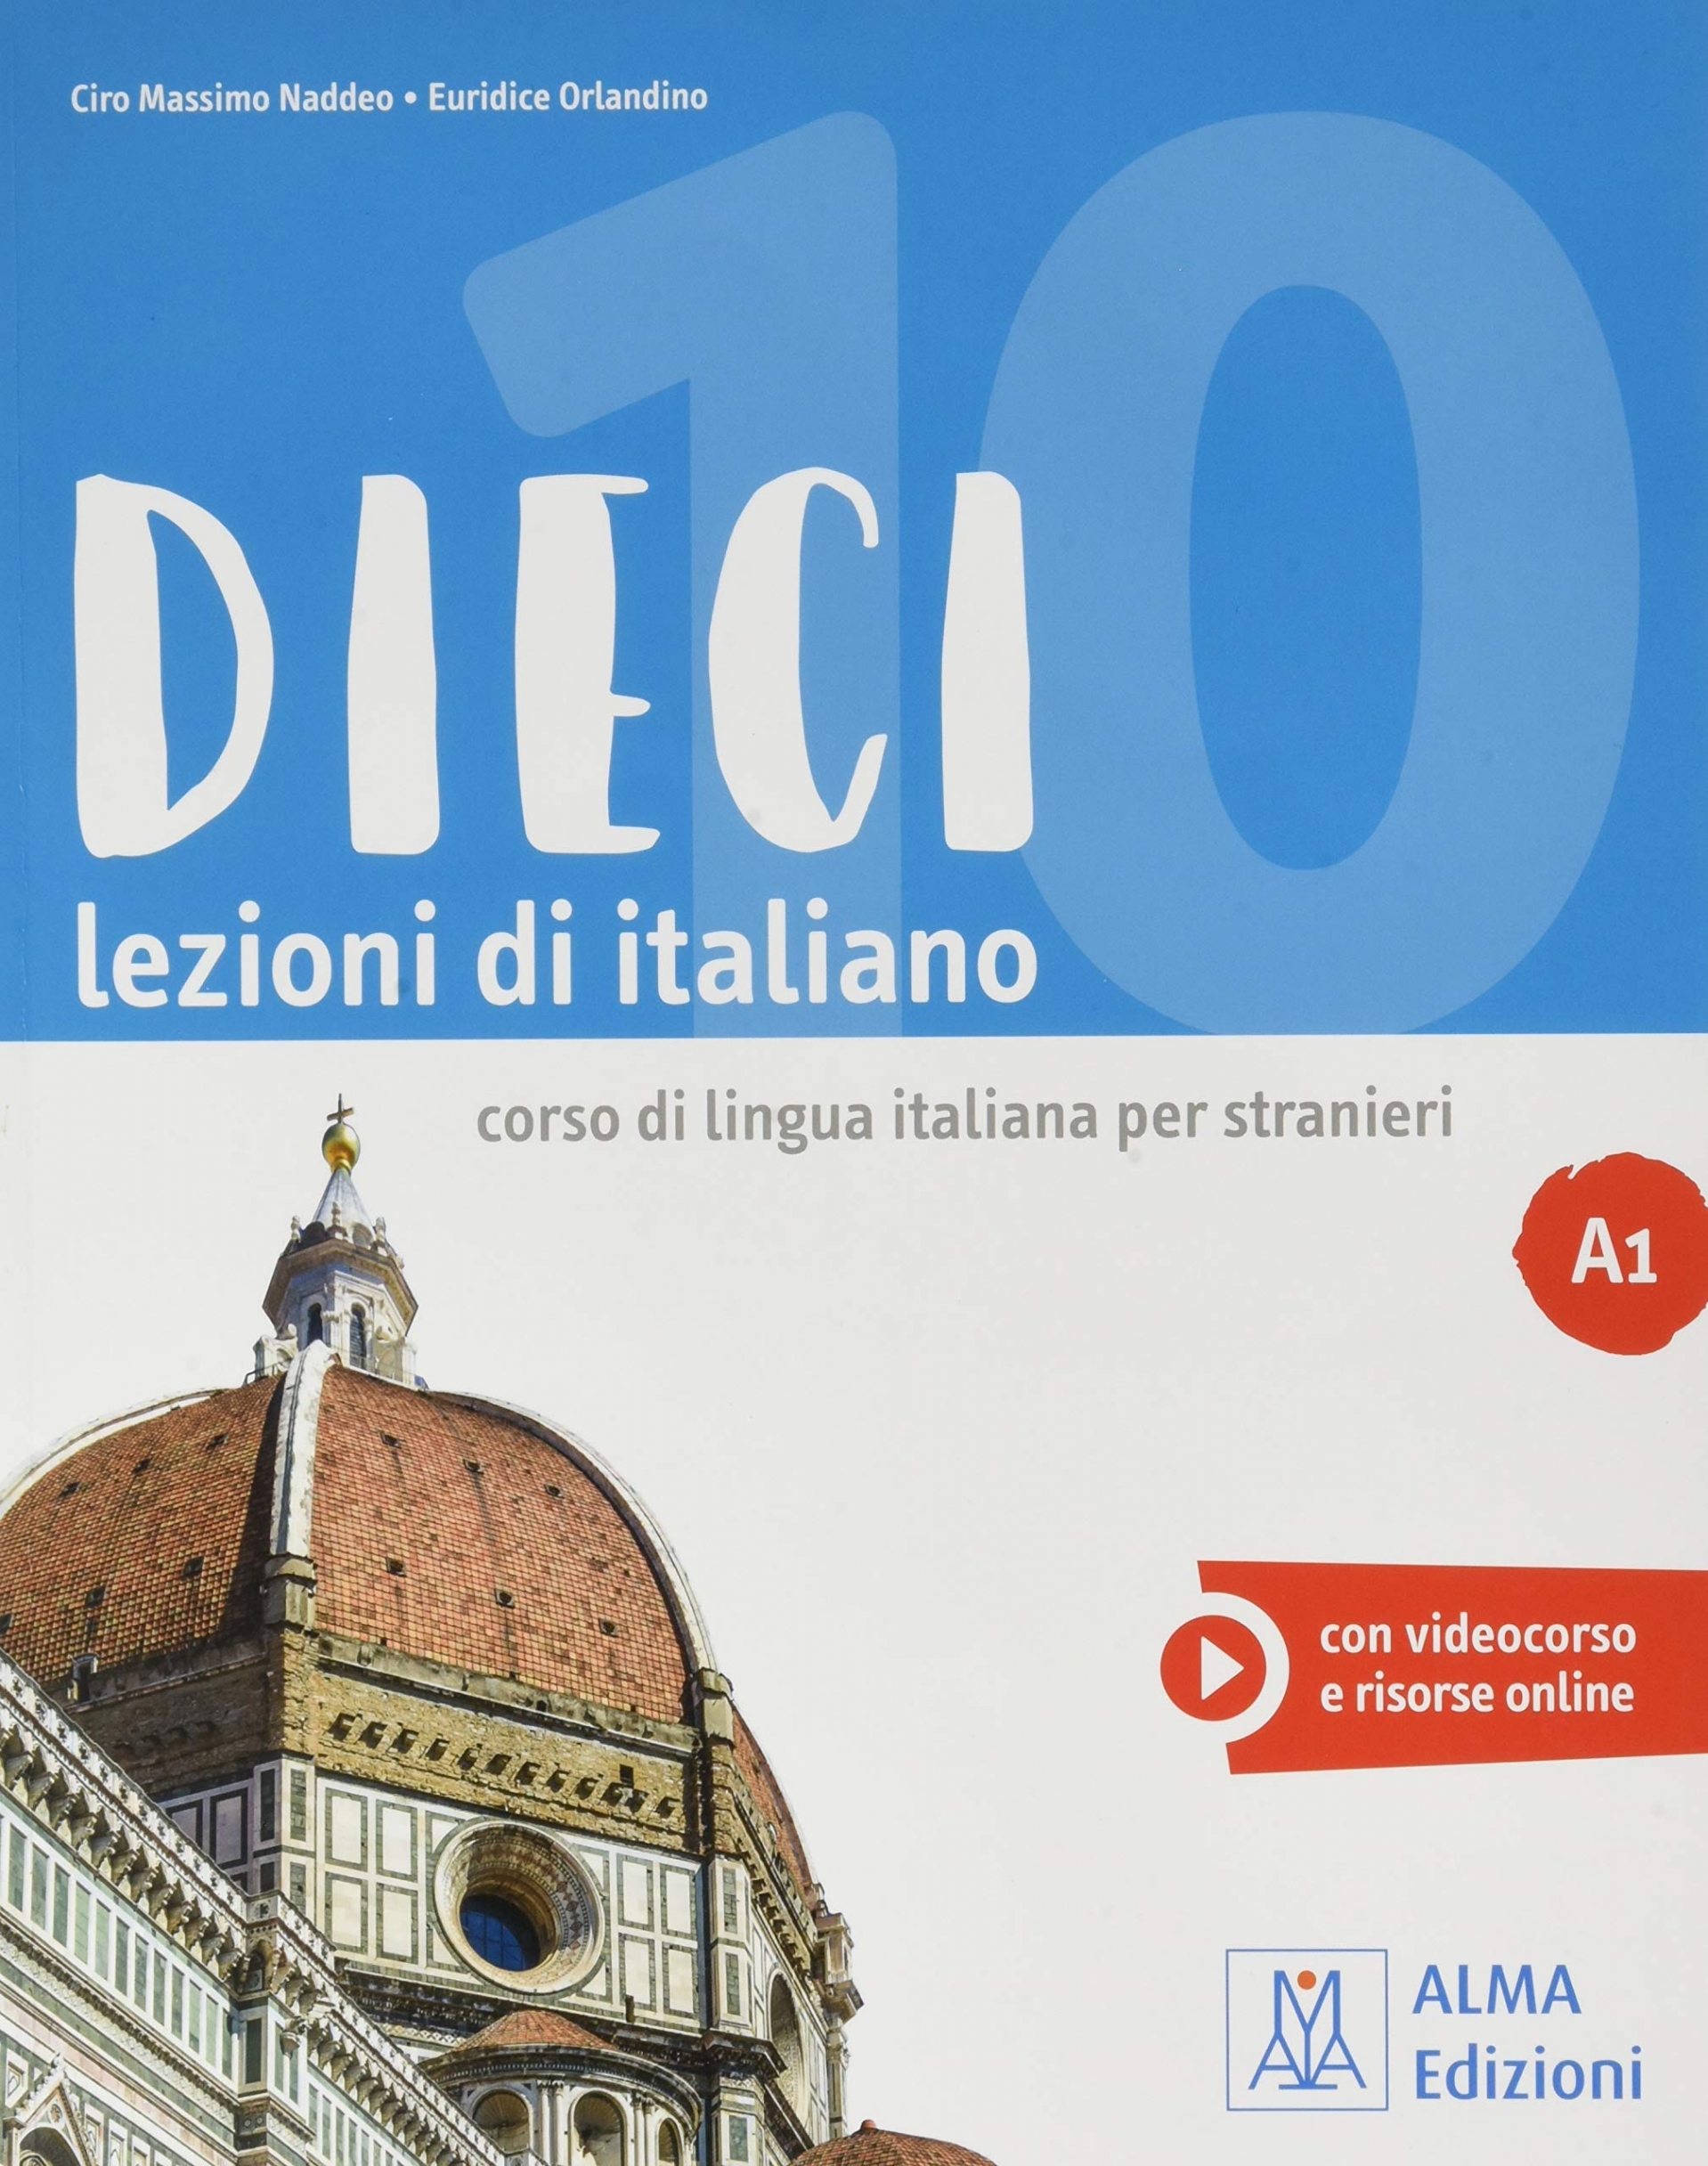 Orlandino, Euridice, Naddeo, Ciro Massimo DIECI A1 Libro+ebook interattivo 